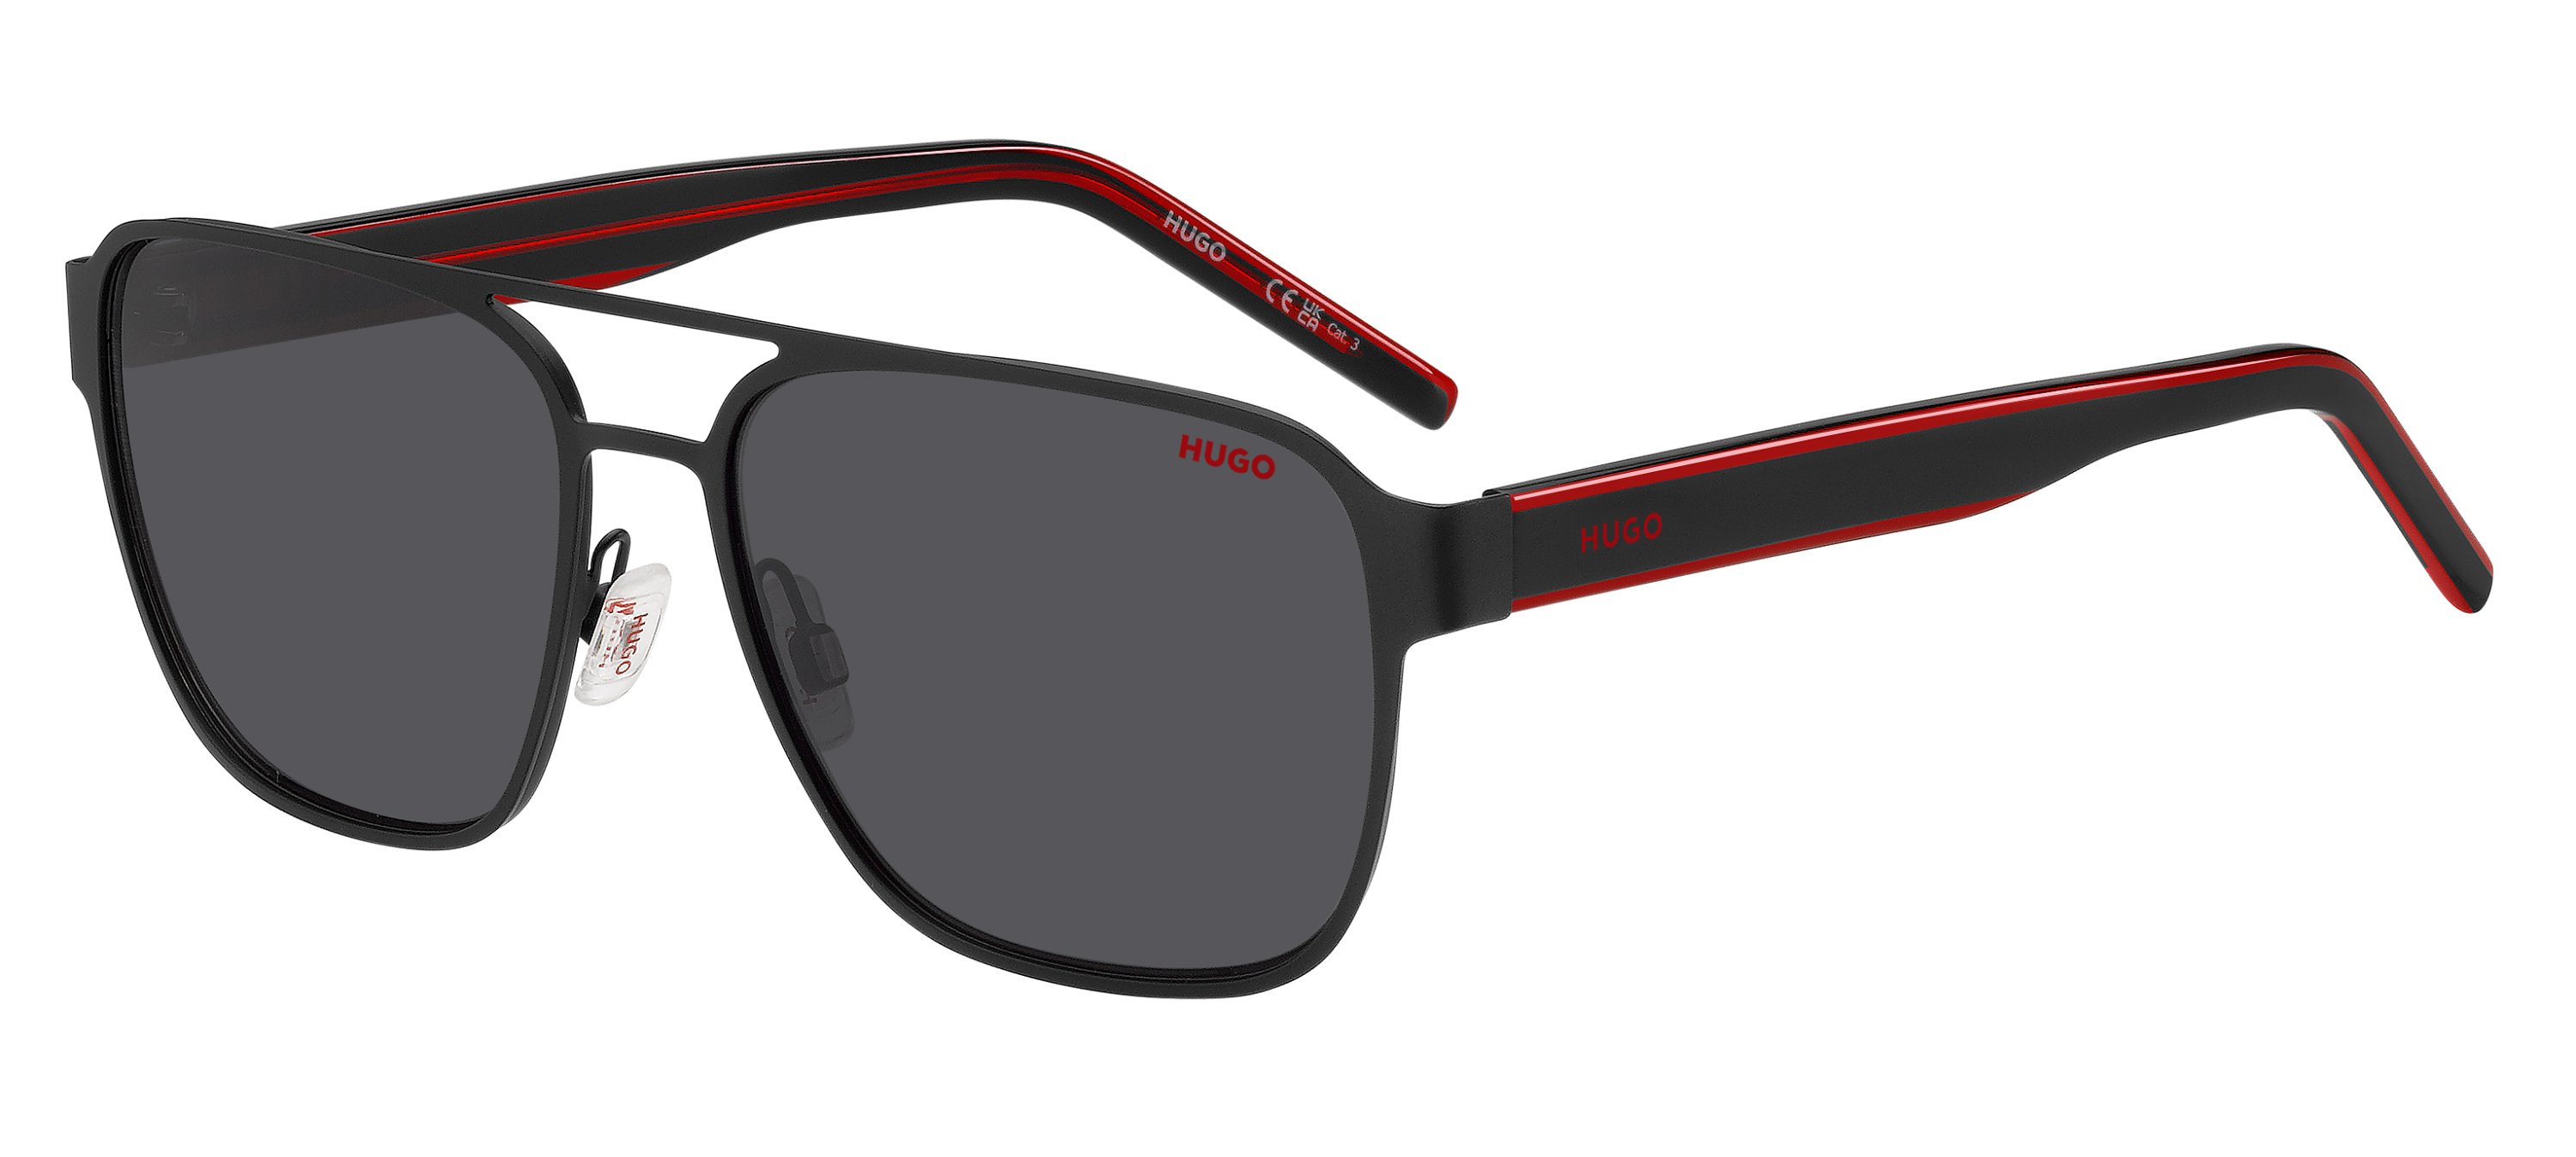 Das Bild zeigt die Sonnenbrille HG1298/S OIT von der Marke Hugo in rot/schwarz.